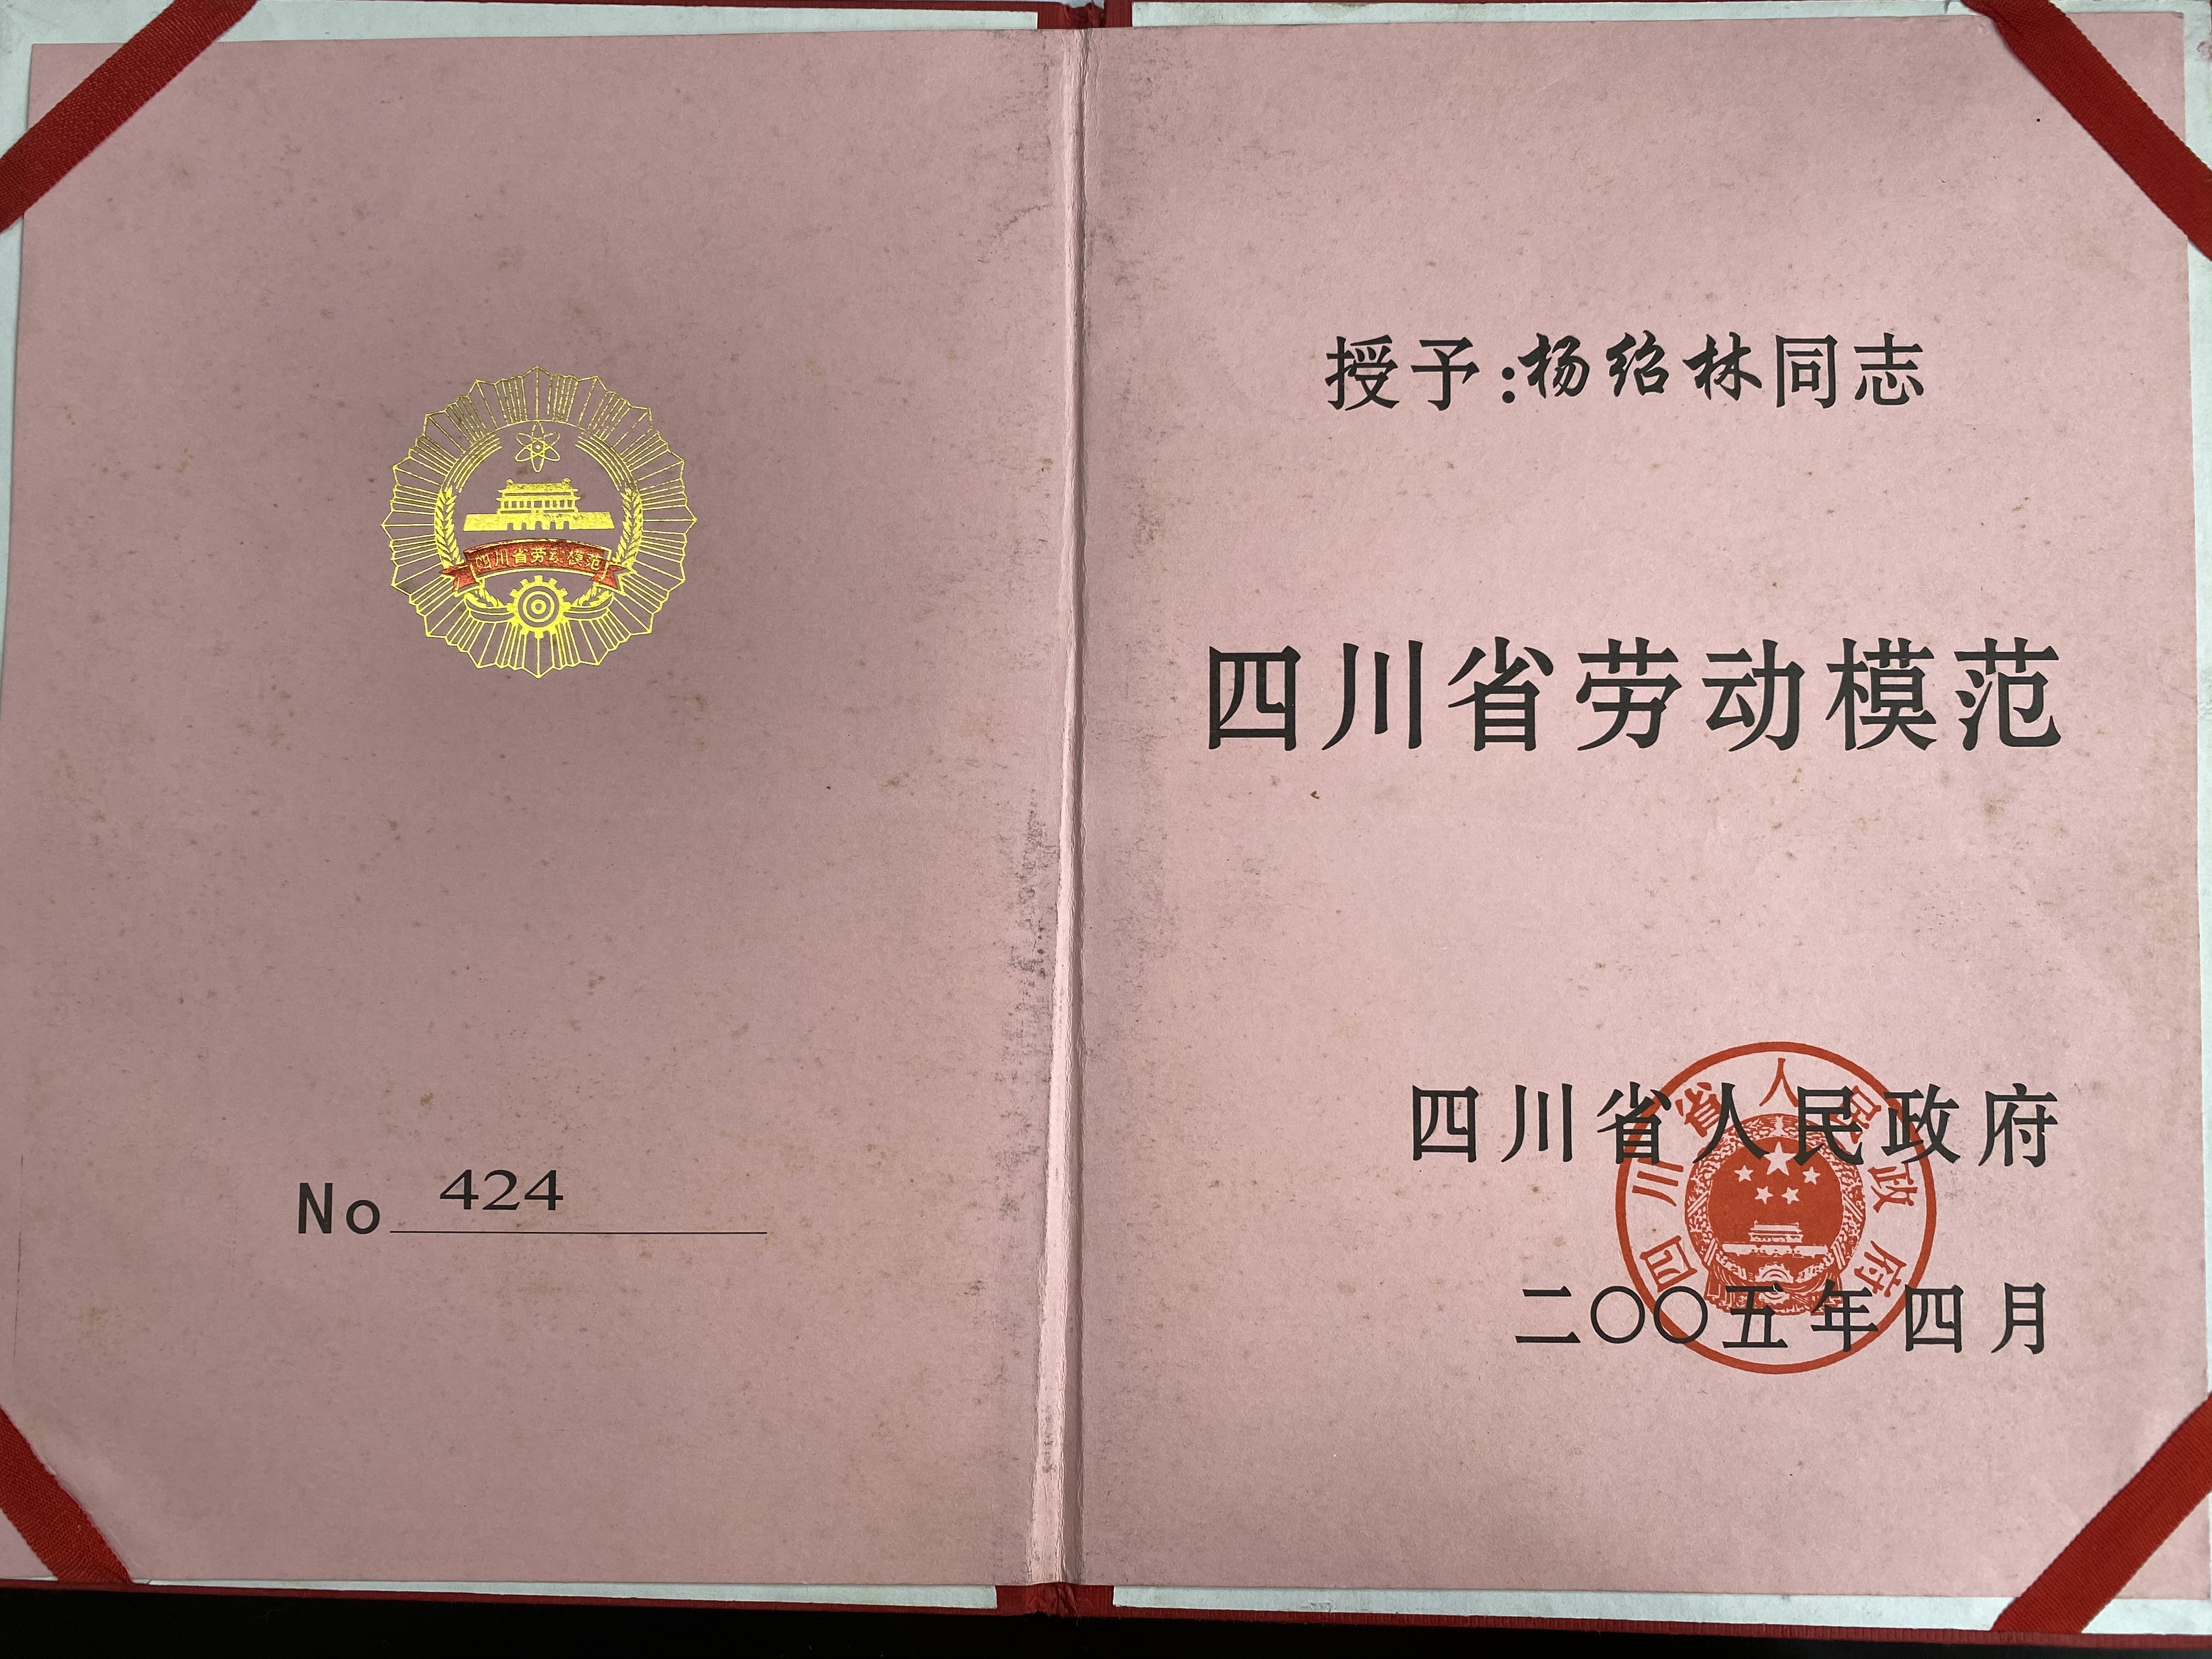 2005年4月被四川省人民政府授予四川省劳动模范证书内容.jpg